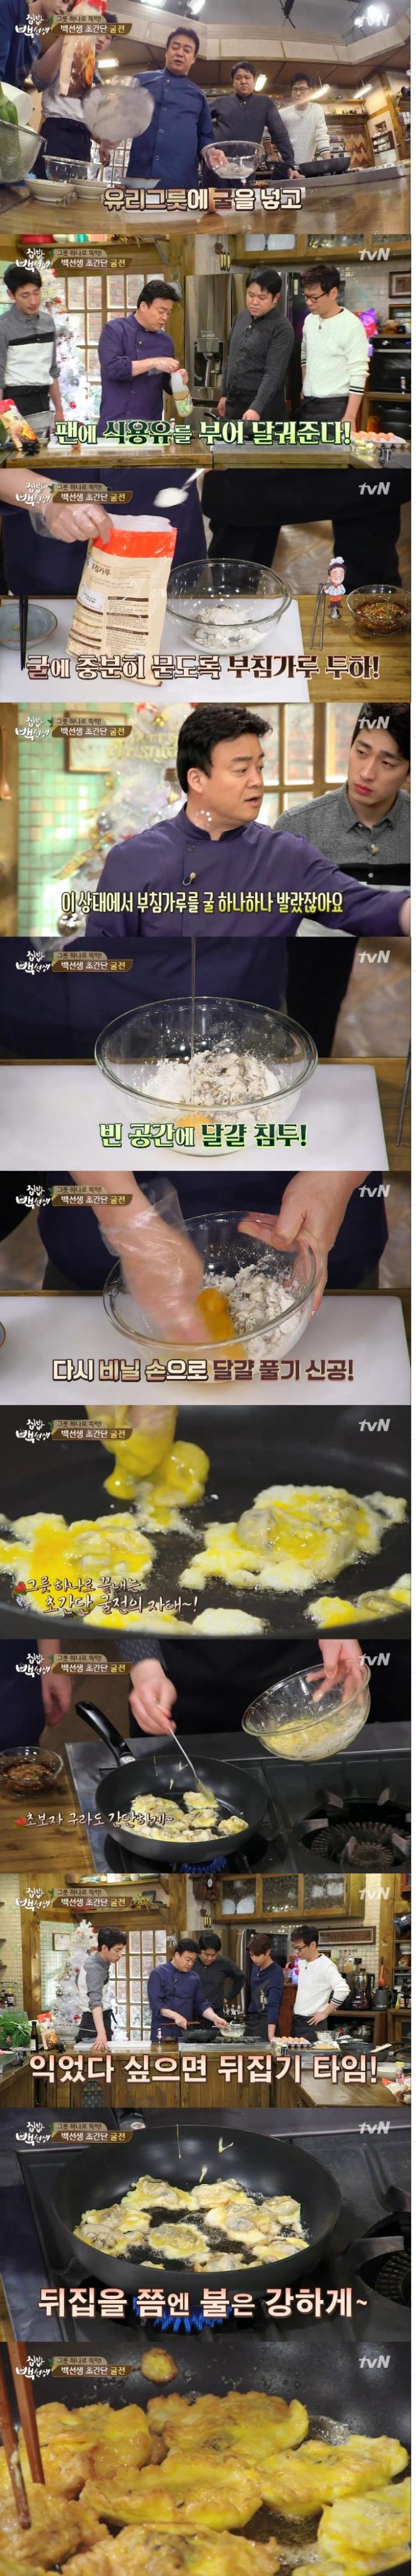 29일 방송된 tvN 집밥 백선생에서는 겨울철 별미 초간단 굴전 만드는 방법이 소개돼 화제를 모았다./사진=tvN 방송캡처